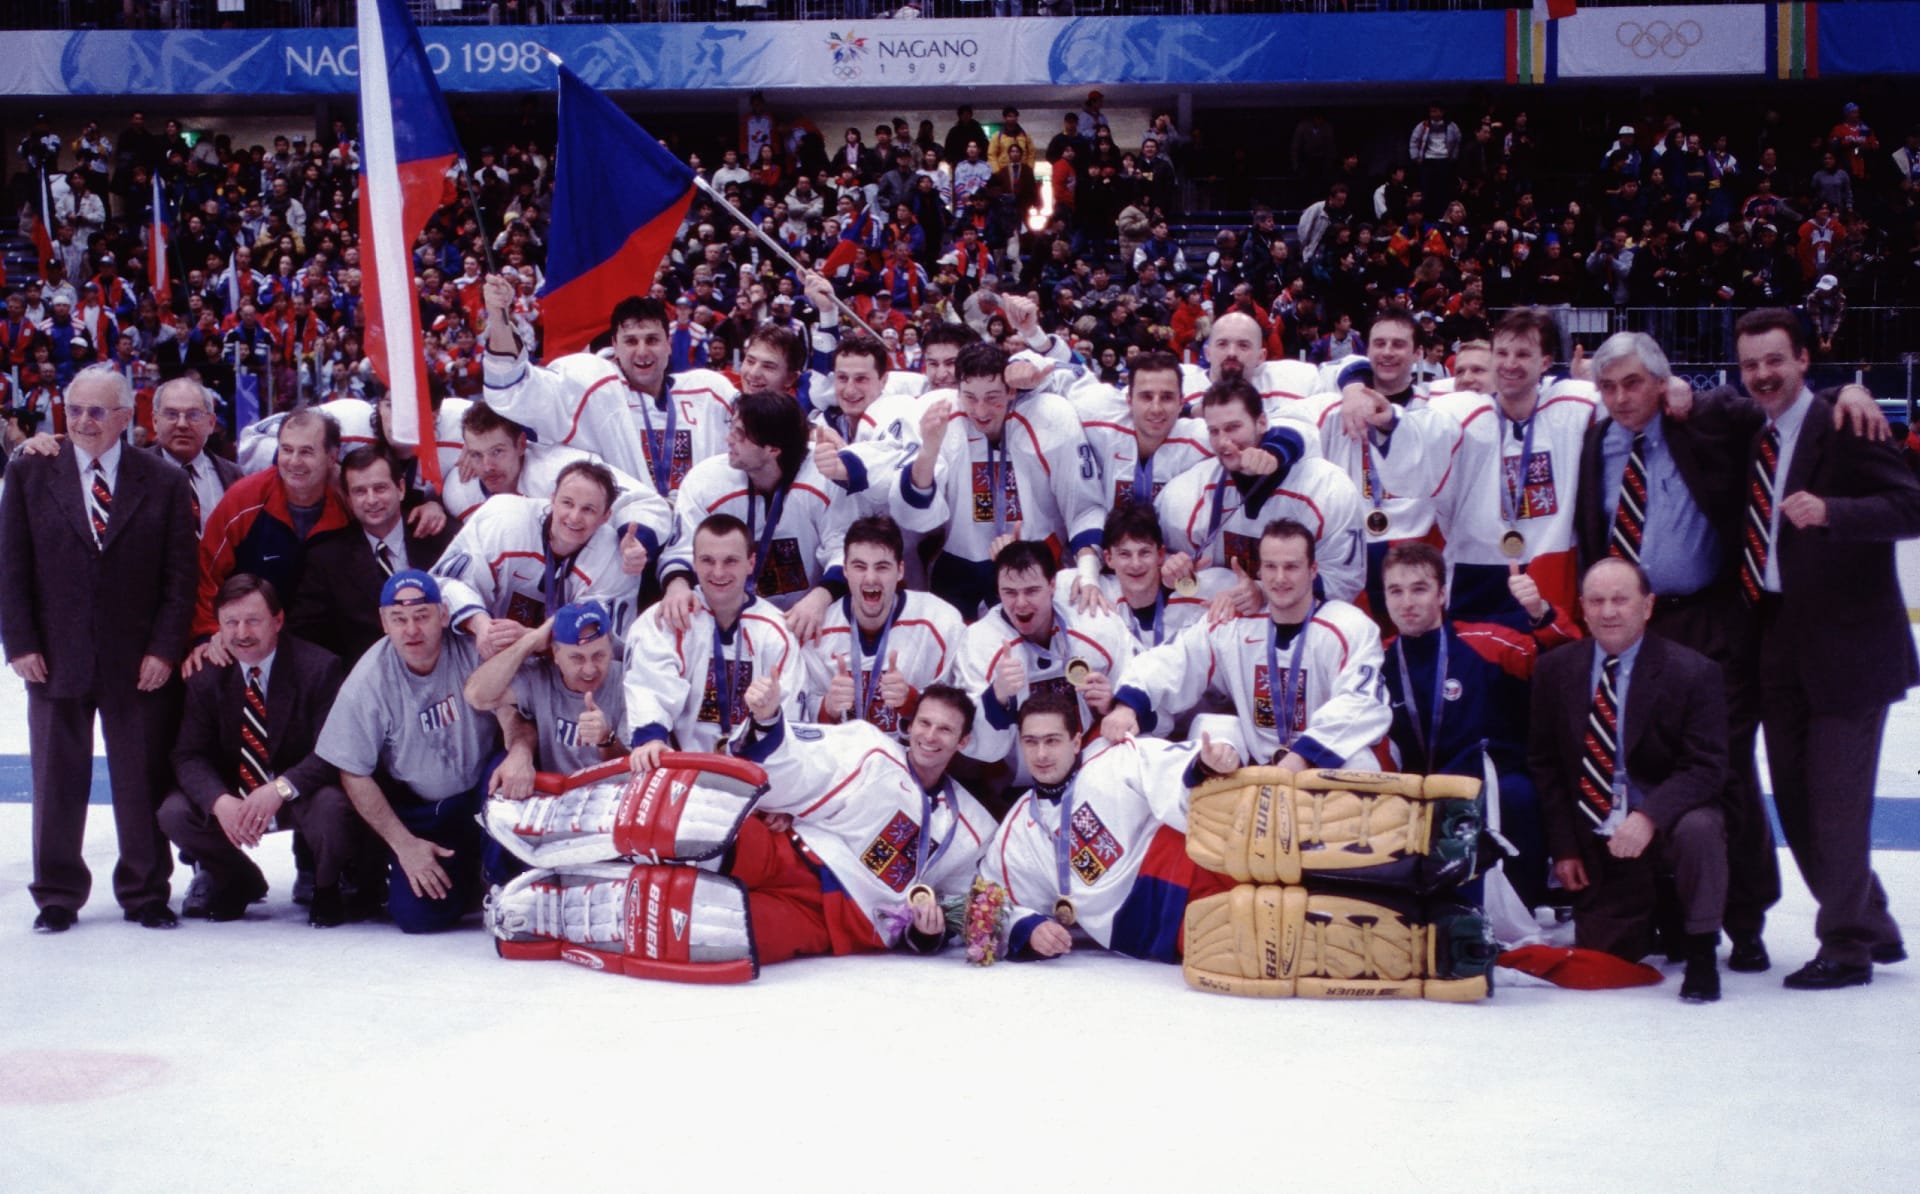 Už dopředu bylo jasné, že hokejové klání na olympiádě v Naganu bude Turnajem století. A favorizovaným zámořským týmům vypálili rybník Češi.